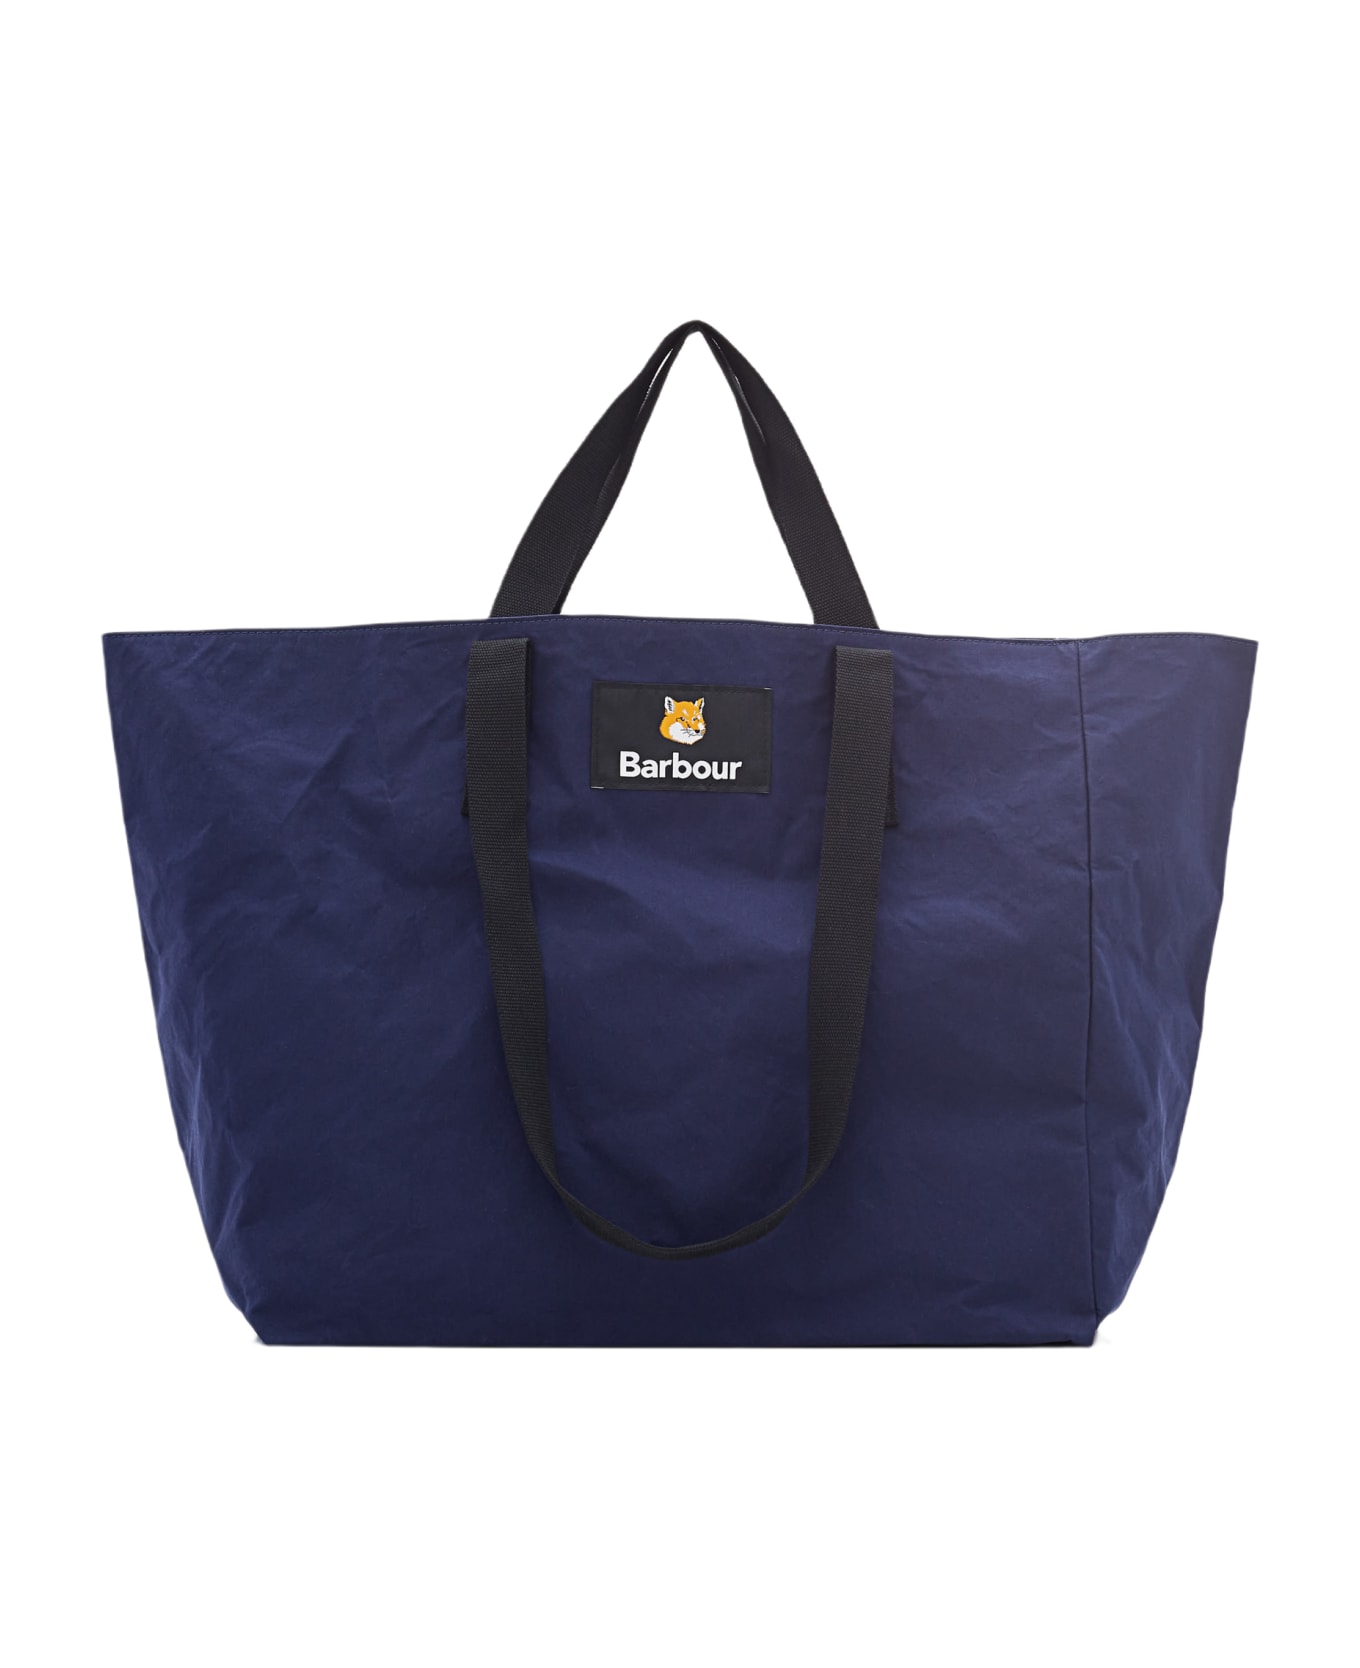 Barbour Reversible Tote Bag | italist